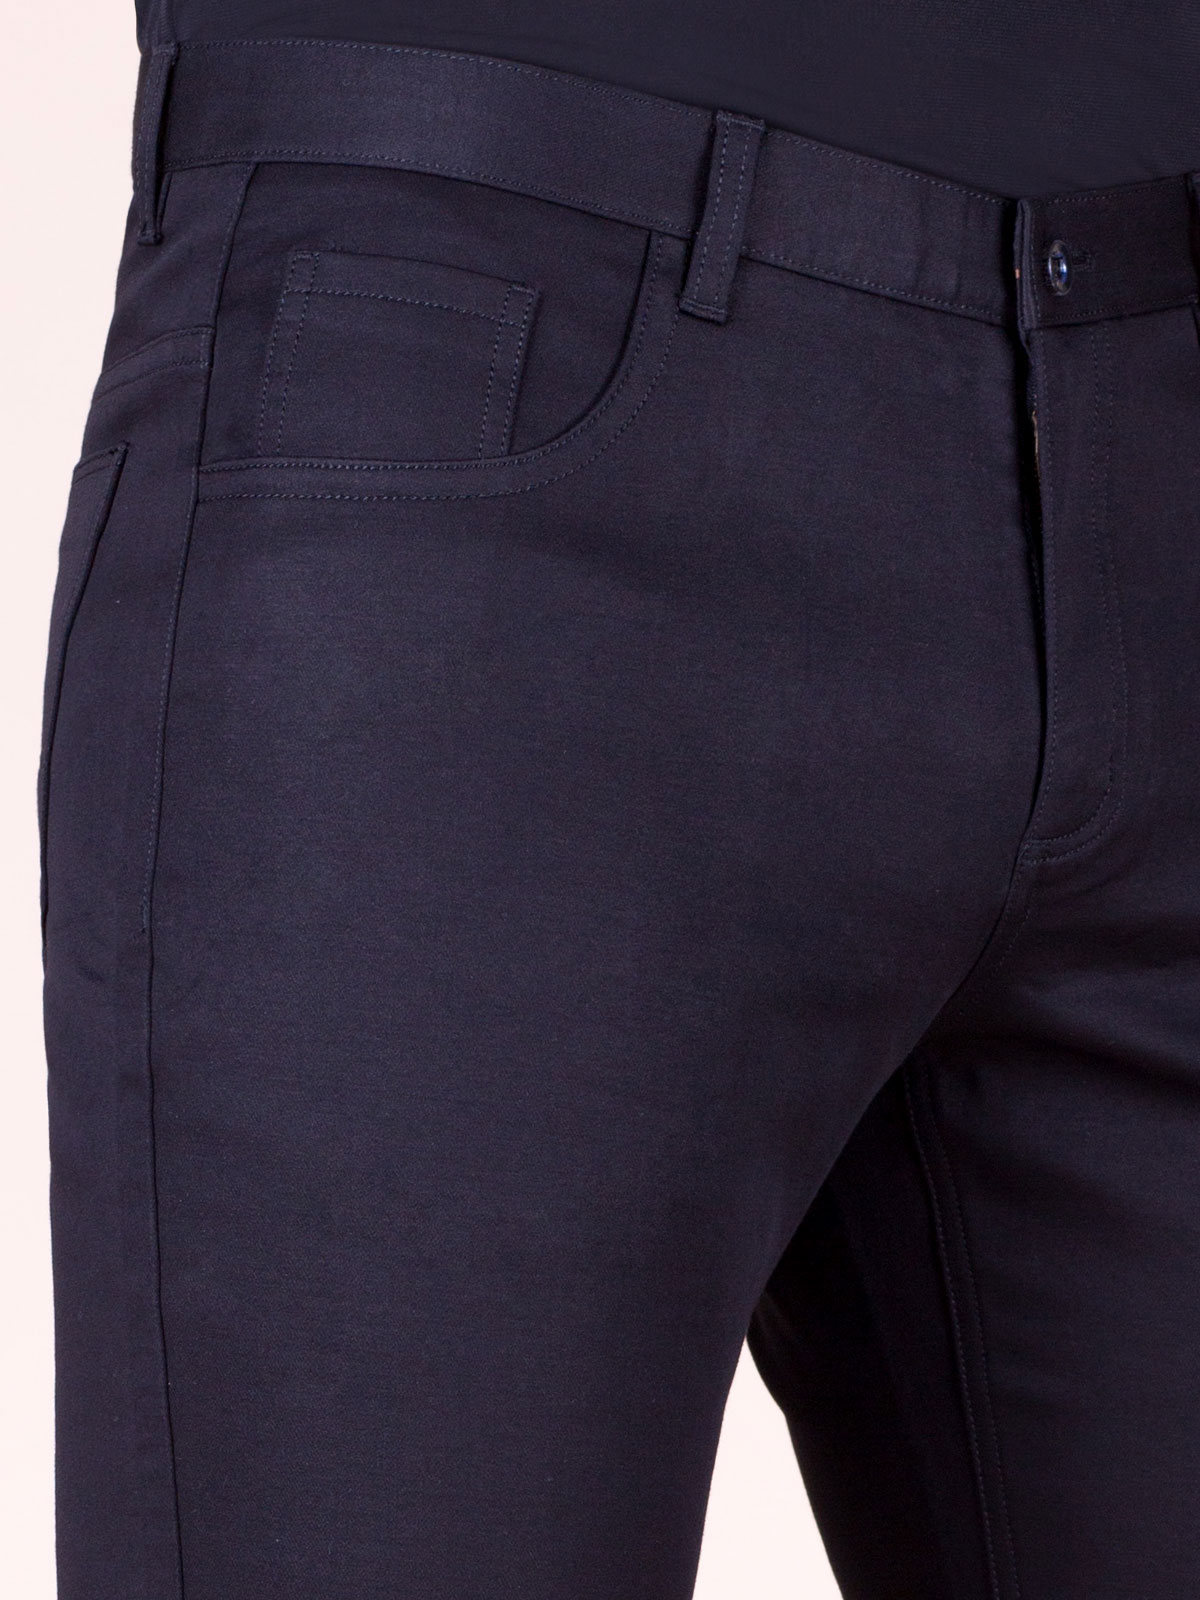 Μαύρο παντελόνι με πέντε τσέπες - 60240 € 18.56 img3